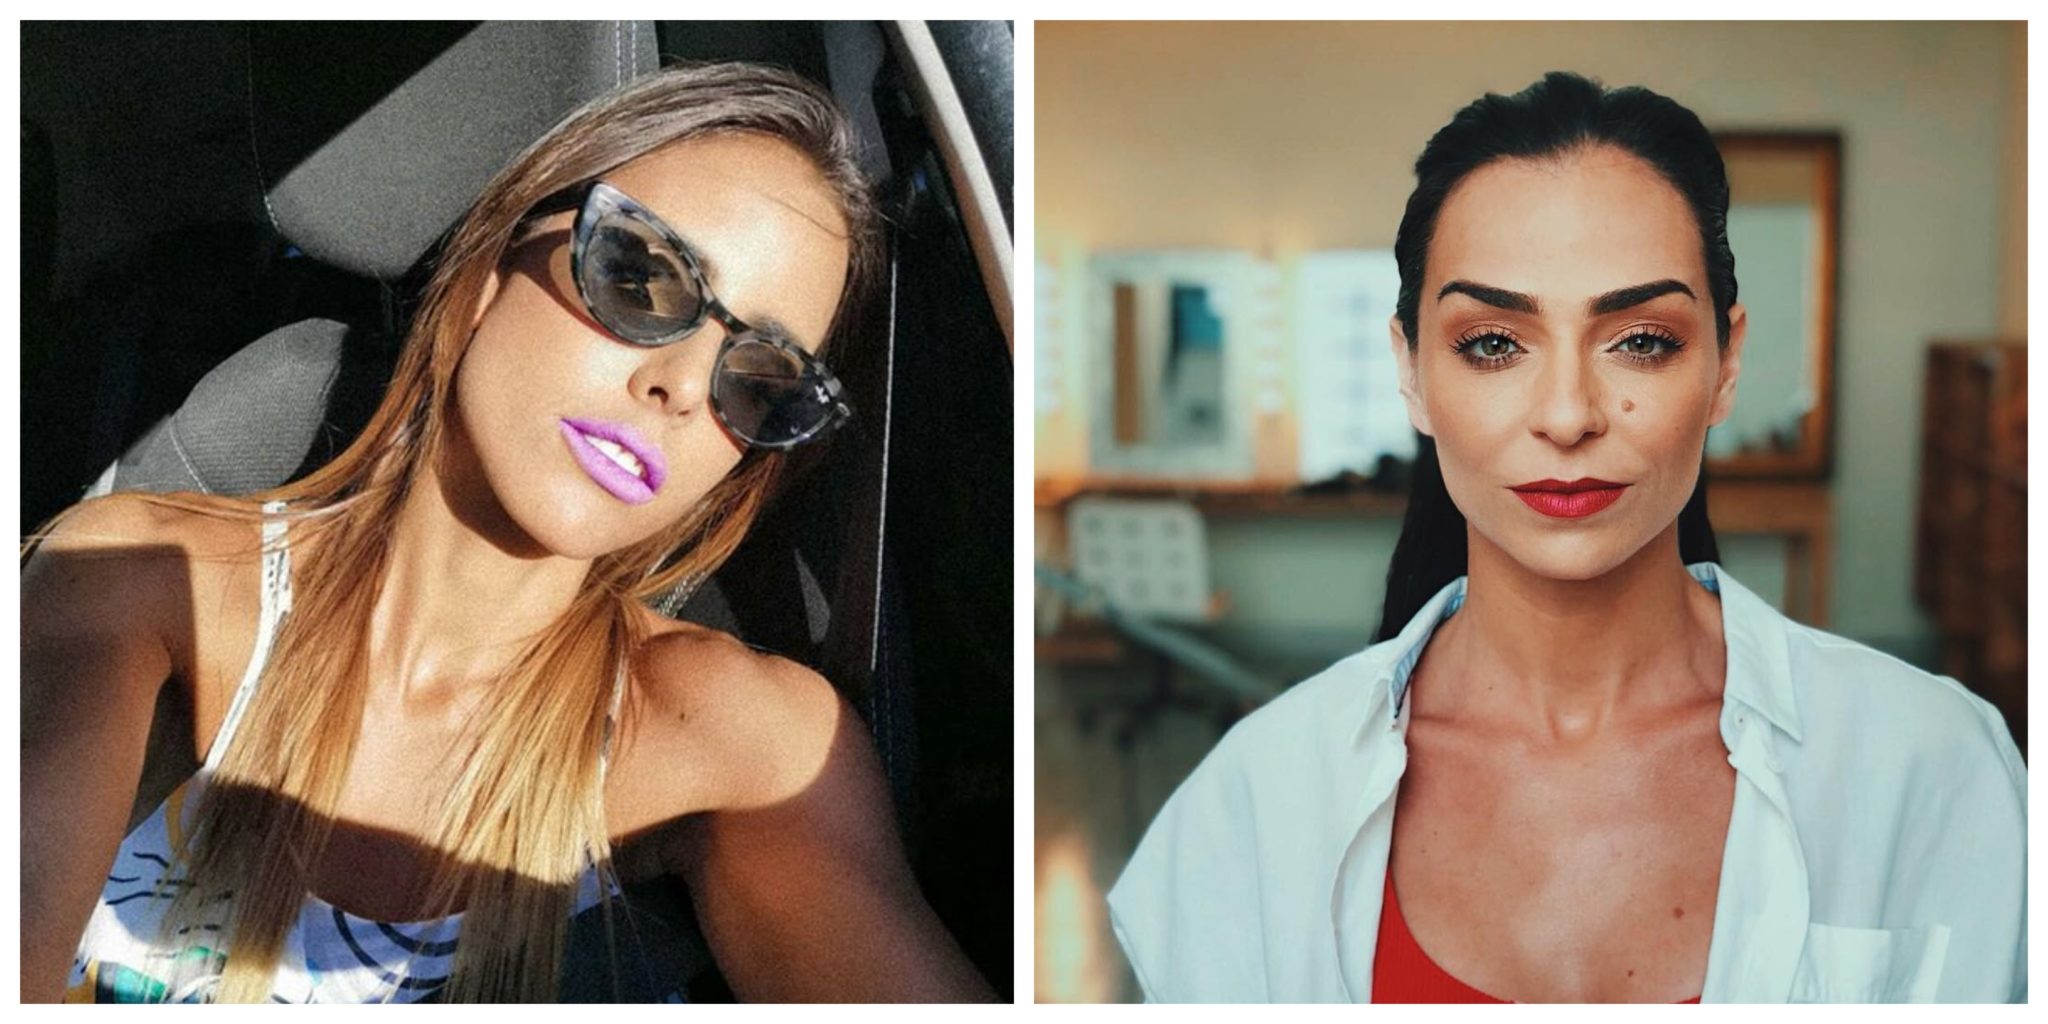 Carolina Patrocínio e Vanessa Martins Carolina Patrocínio critica Vanessa Martins: "Não deixa de ser um bocadinho hipócrita”